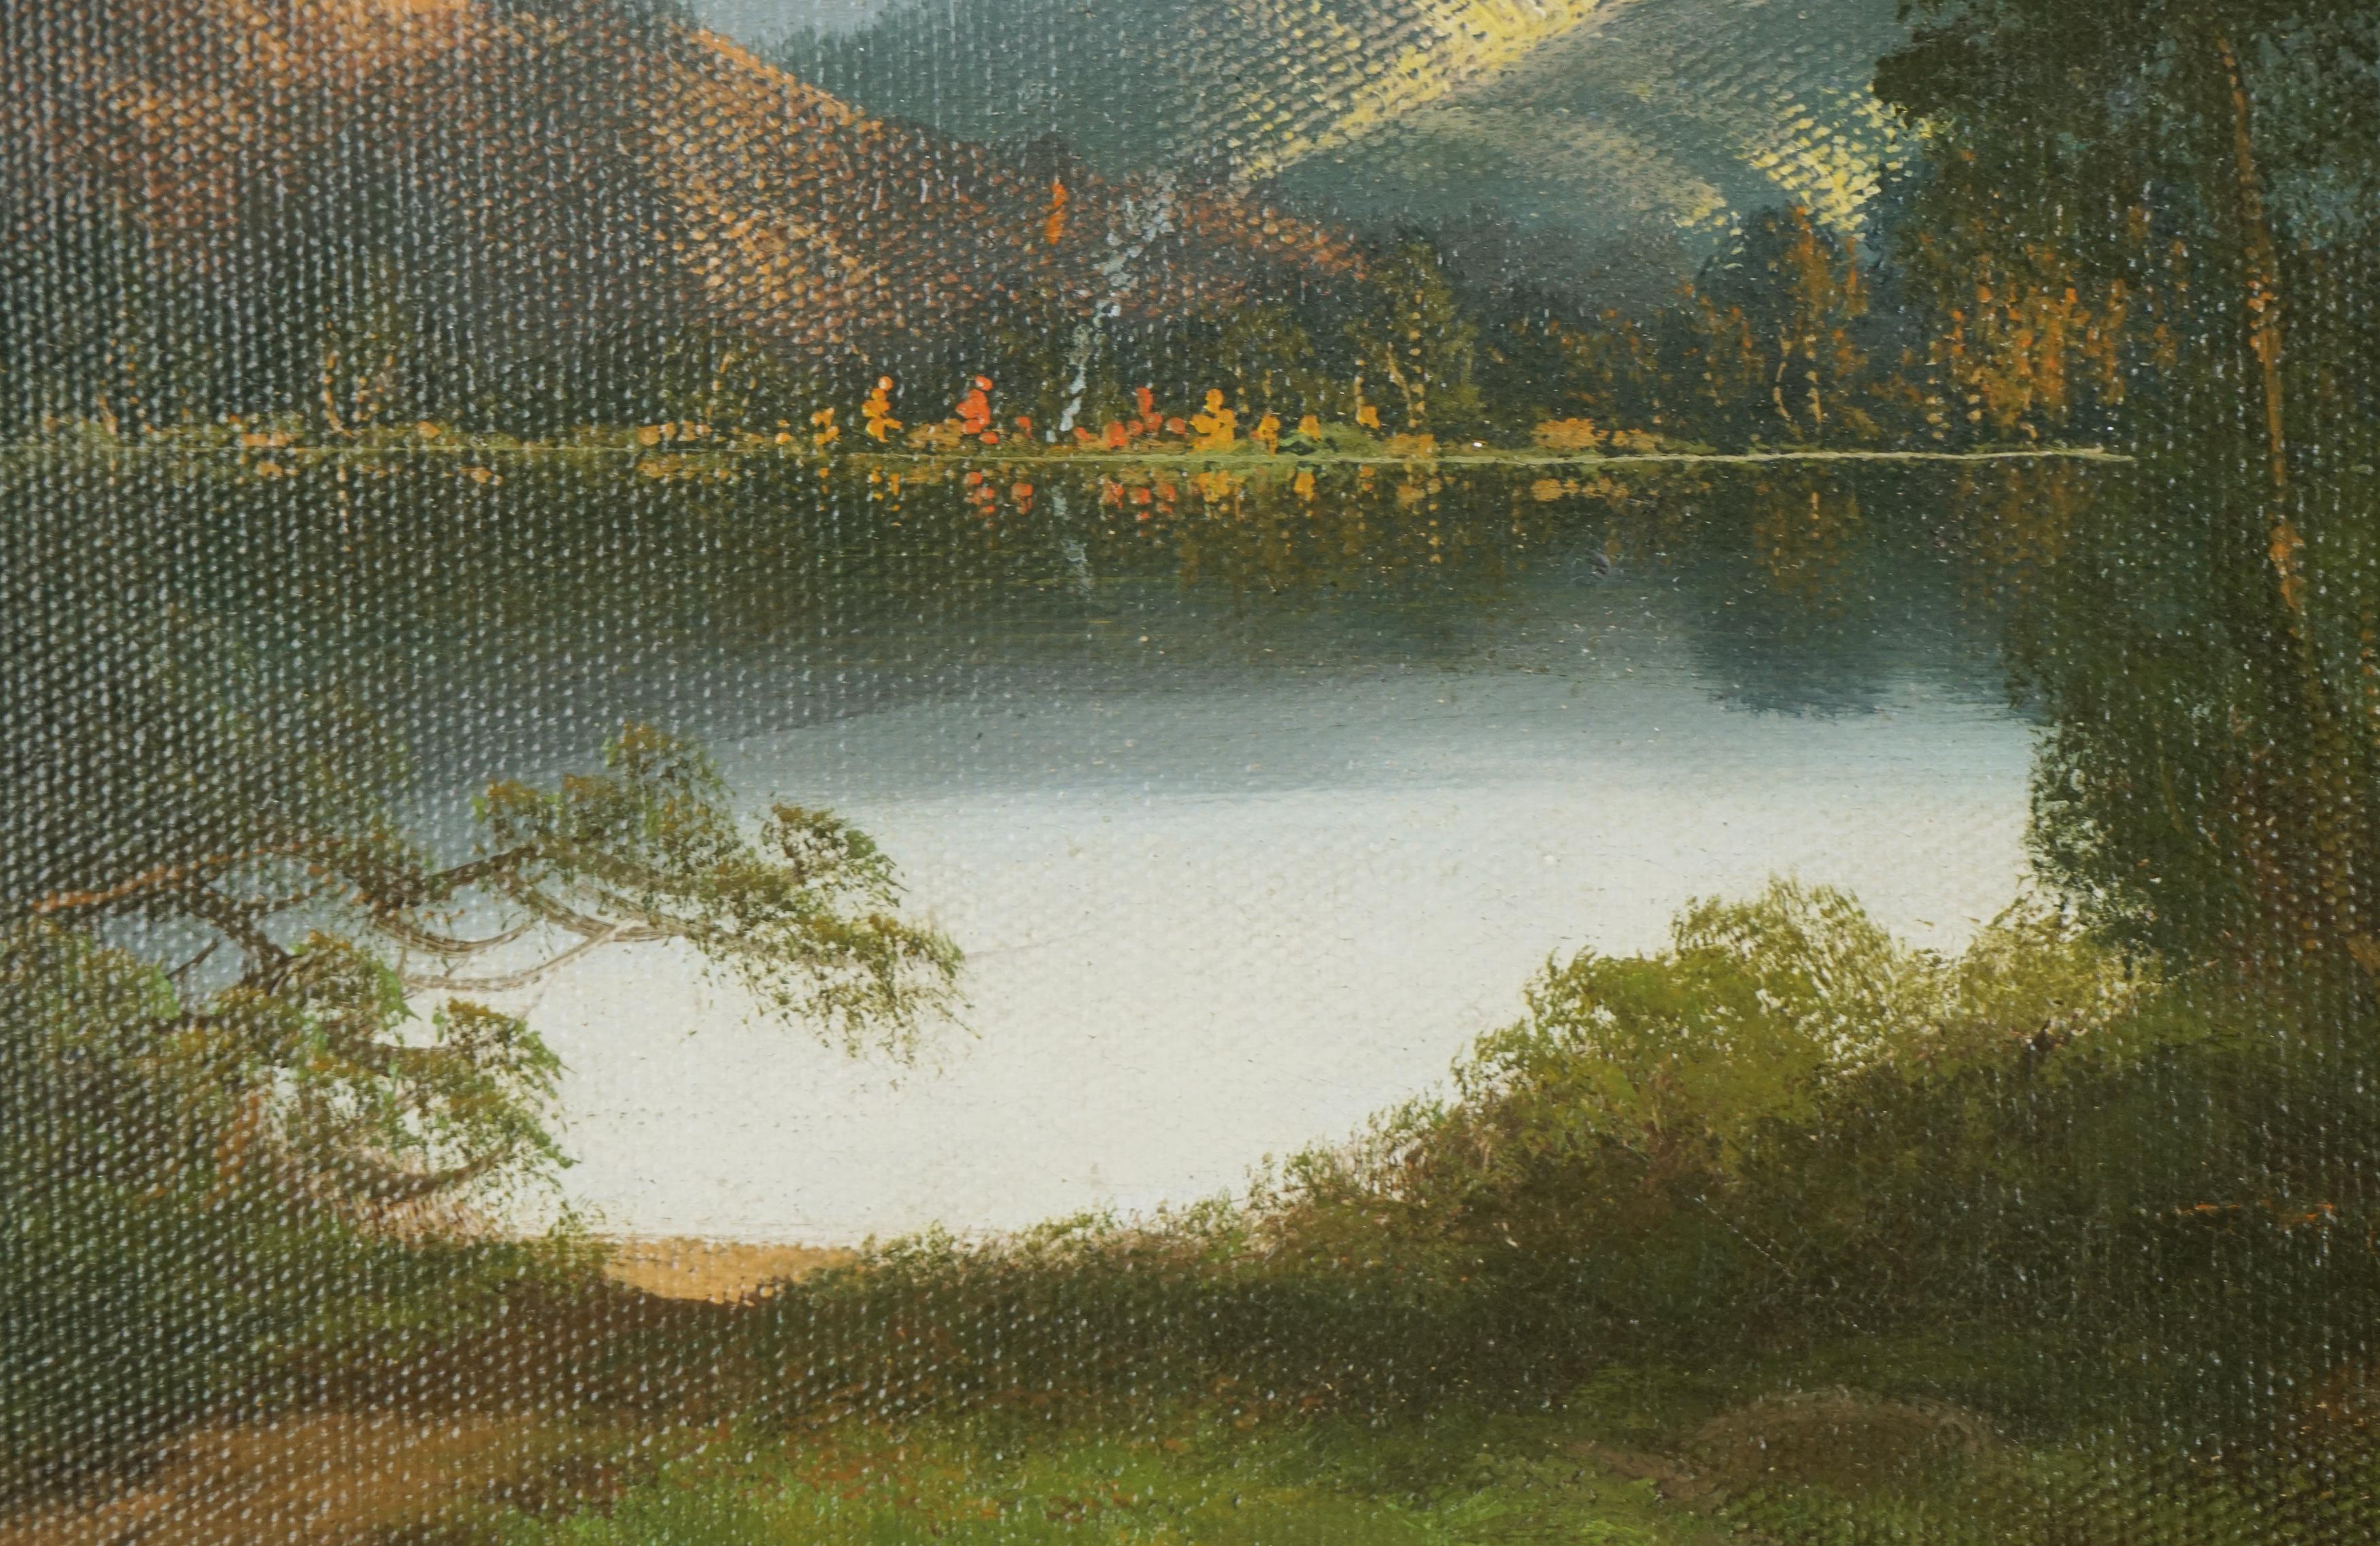 Schönes Ölgemälde von John Englehart aus dem frühen 19. Jahrhundert vom Lake Tahoe mit einem Indianerlager auf der anderen Seite des Sees  (auch bekannt als John Englehardt), (Amerikaner, 1867-1915). Ein friedlicher See in der Morgendämmerung mit